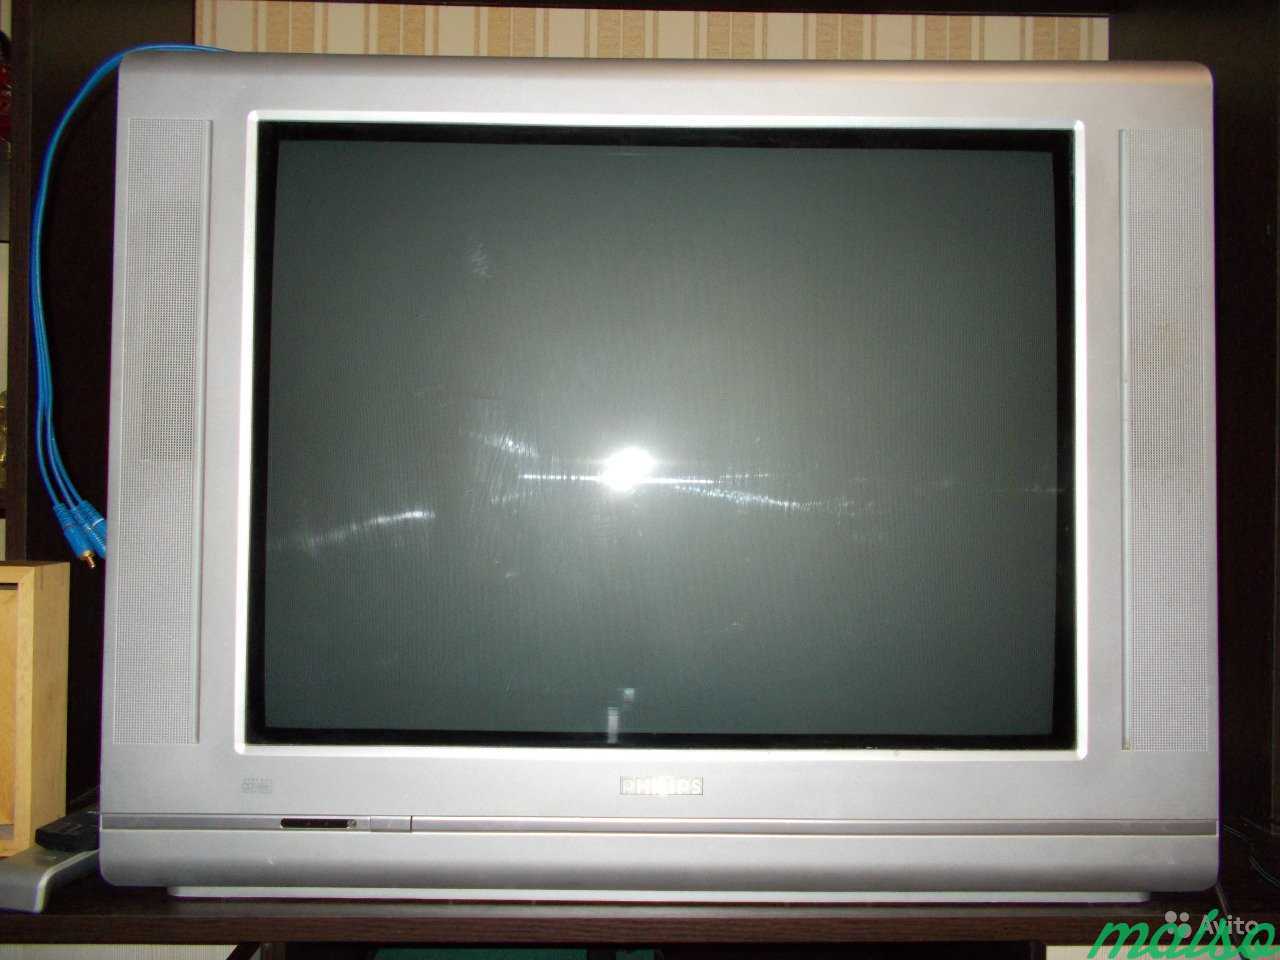 Продать телевизор спб. Телевизор Toshiba 2002 год. Телевизор Тошиба кинескопный. Телик Тошиба 2000. Телевизор Тошиба кинескопный плоский.